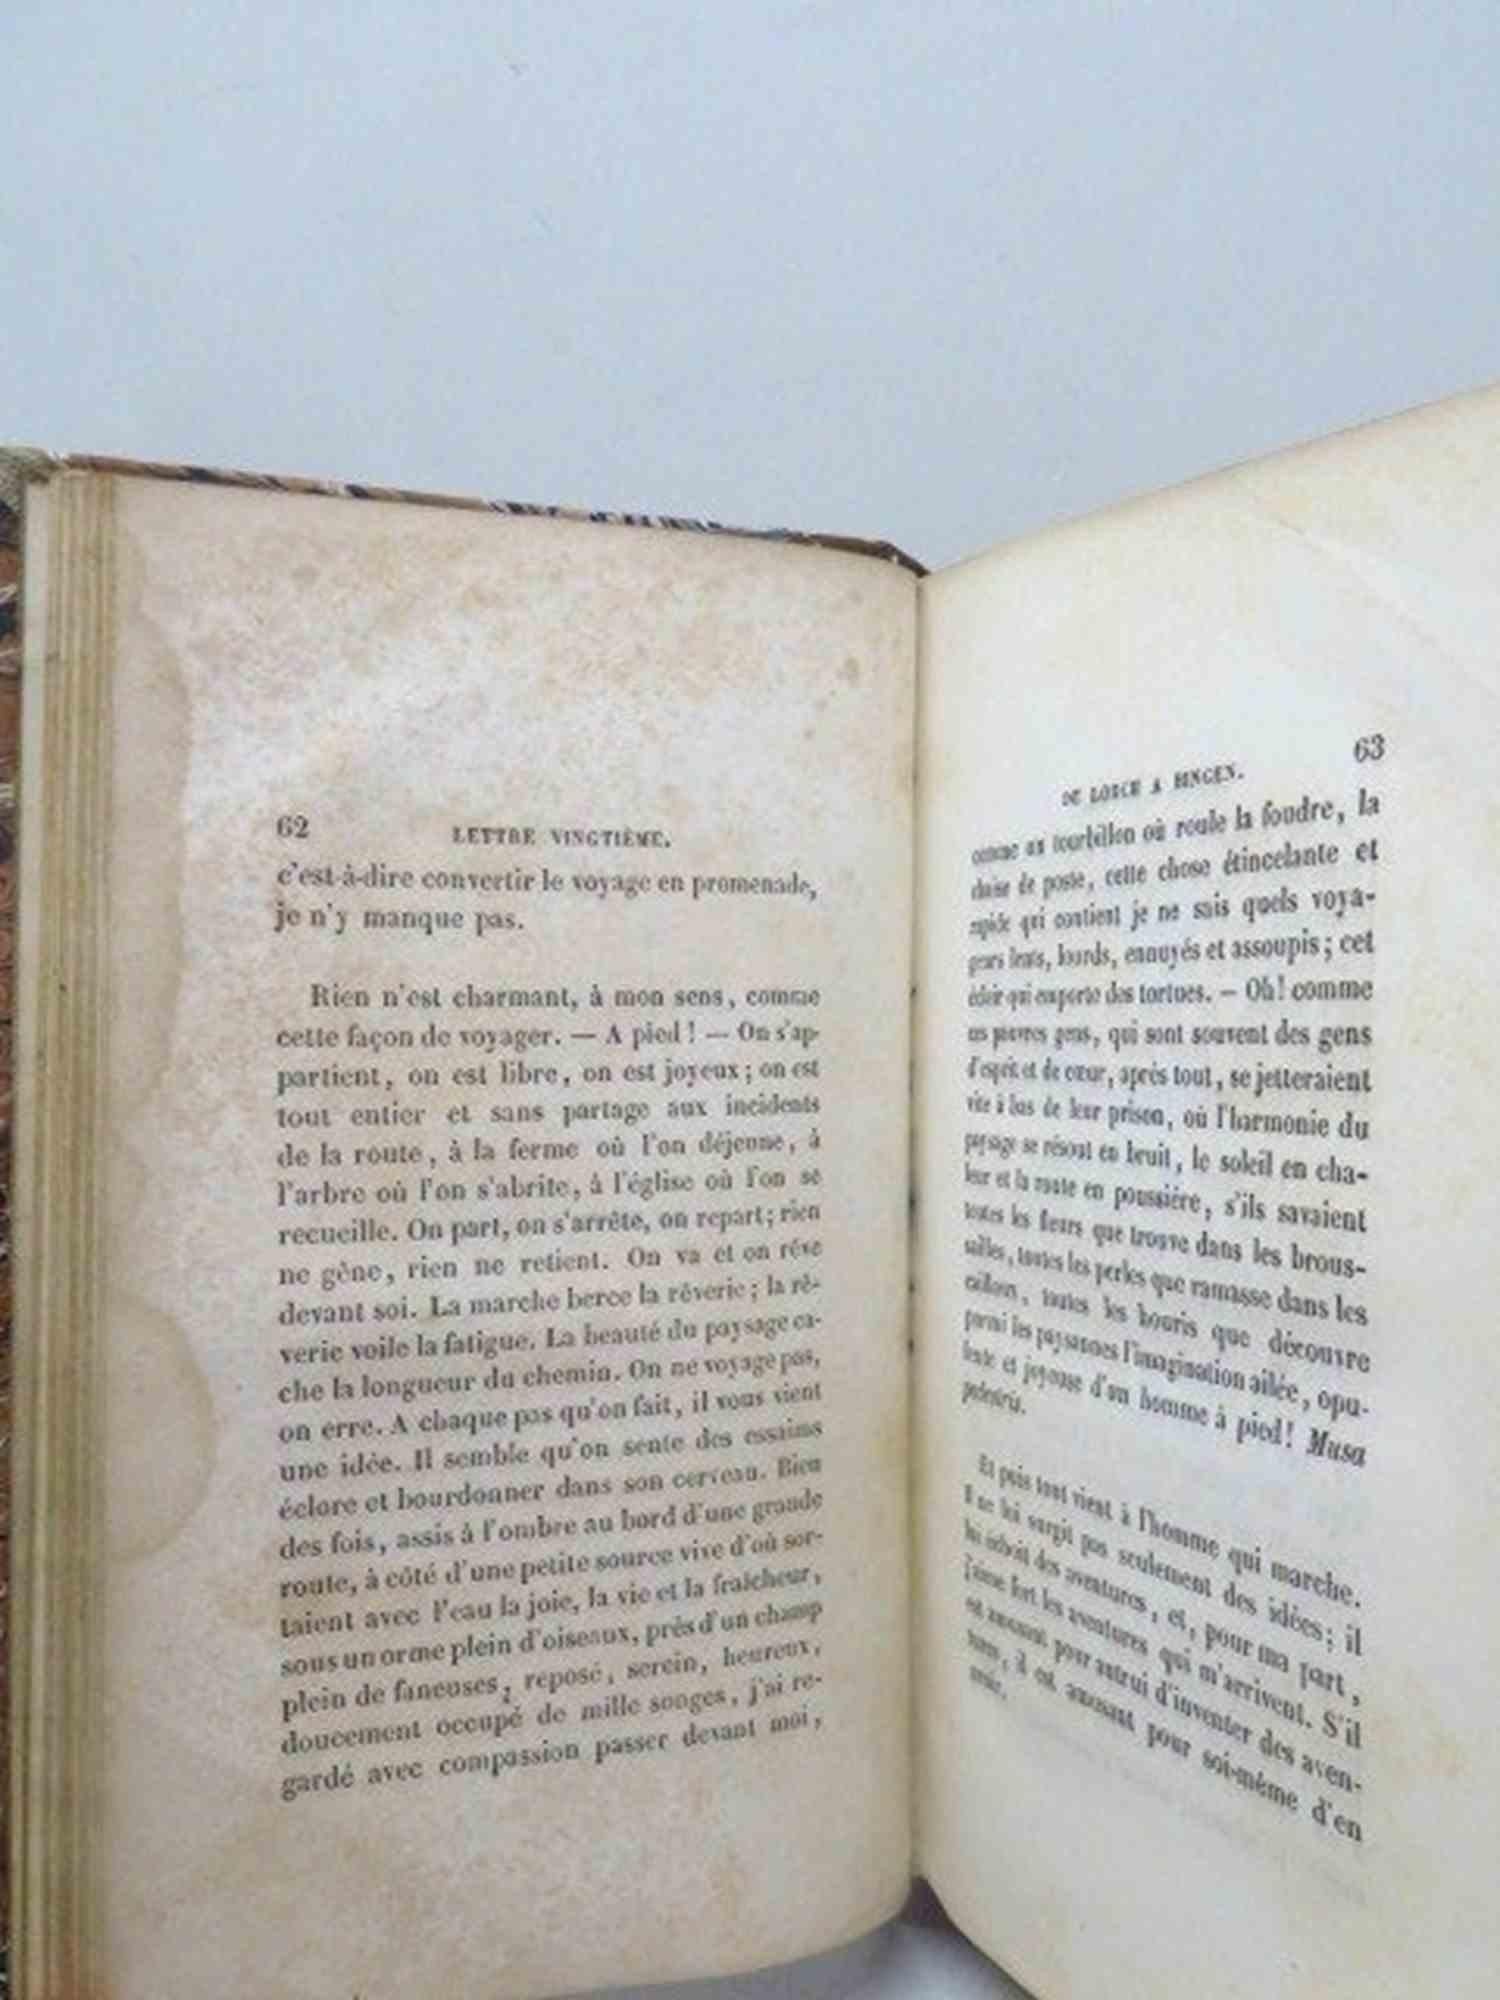 Le Rhin. Lettres à un Ami - Rare Book by Victor Hugo - 1842 For Sale 3